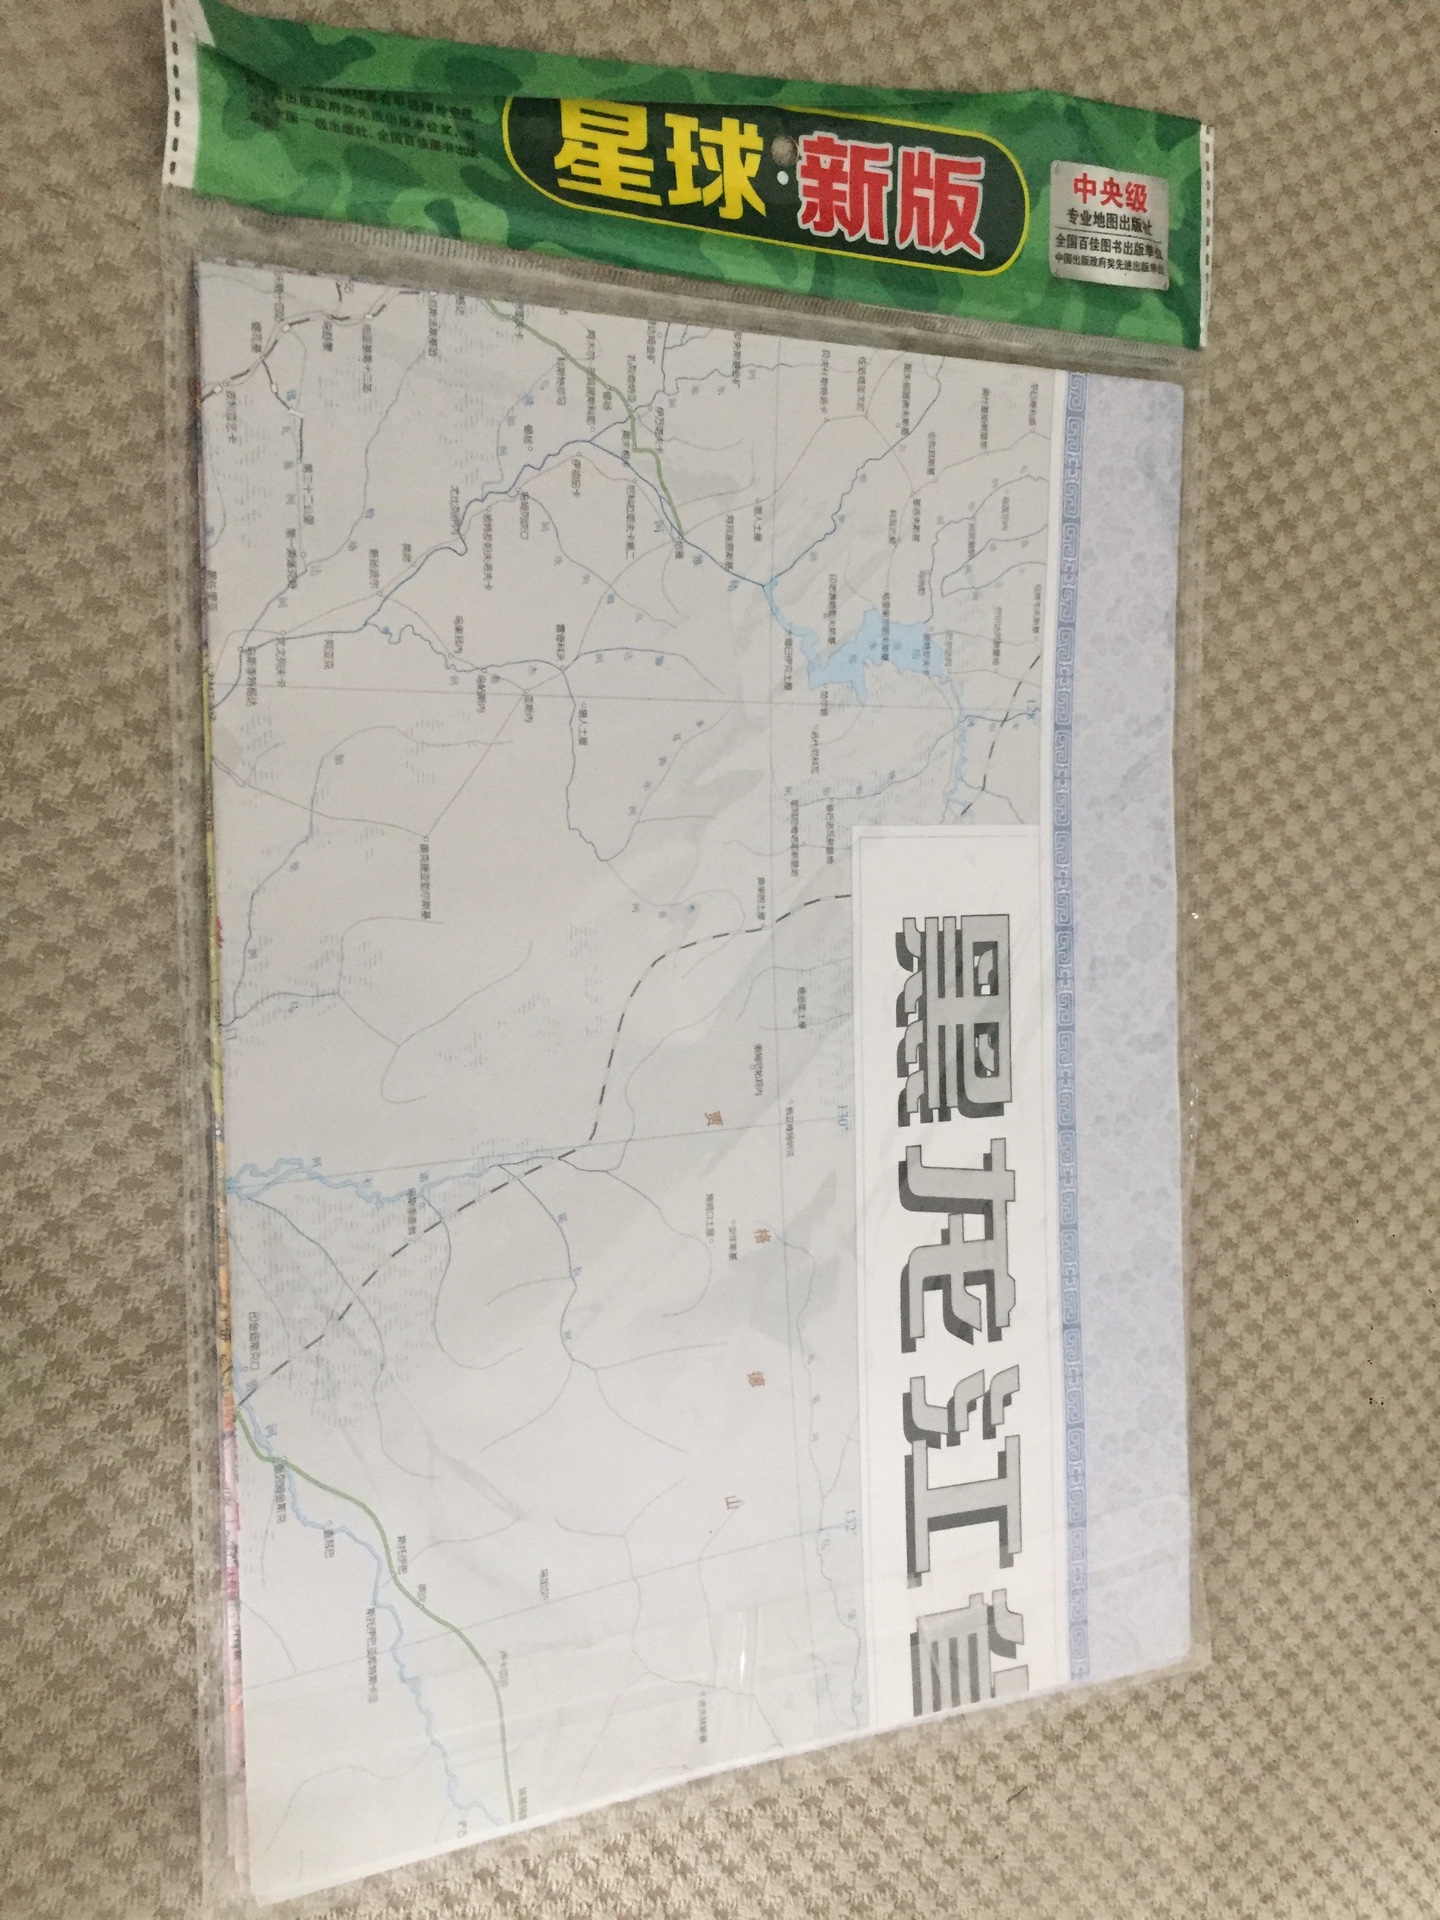 近期准备去黑龙江徒步旅行，备一个纸质地图，方便，直观